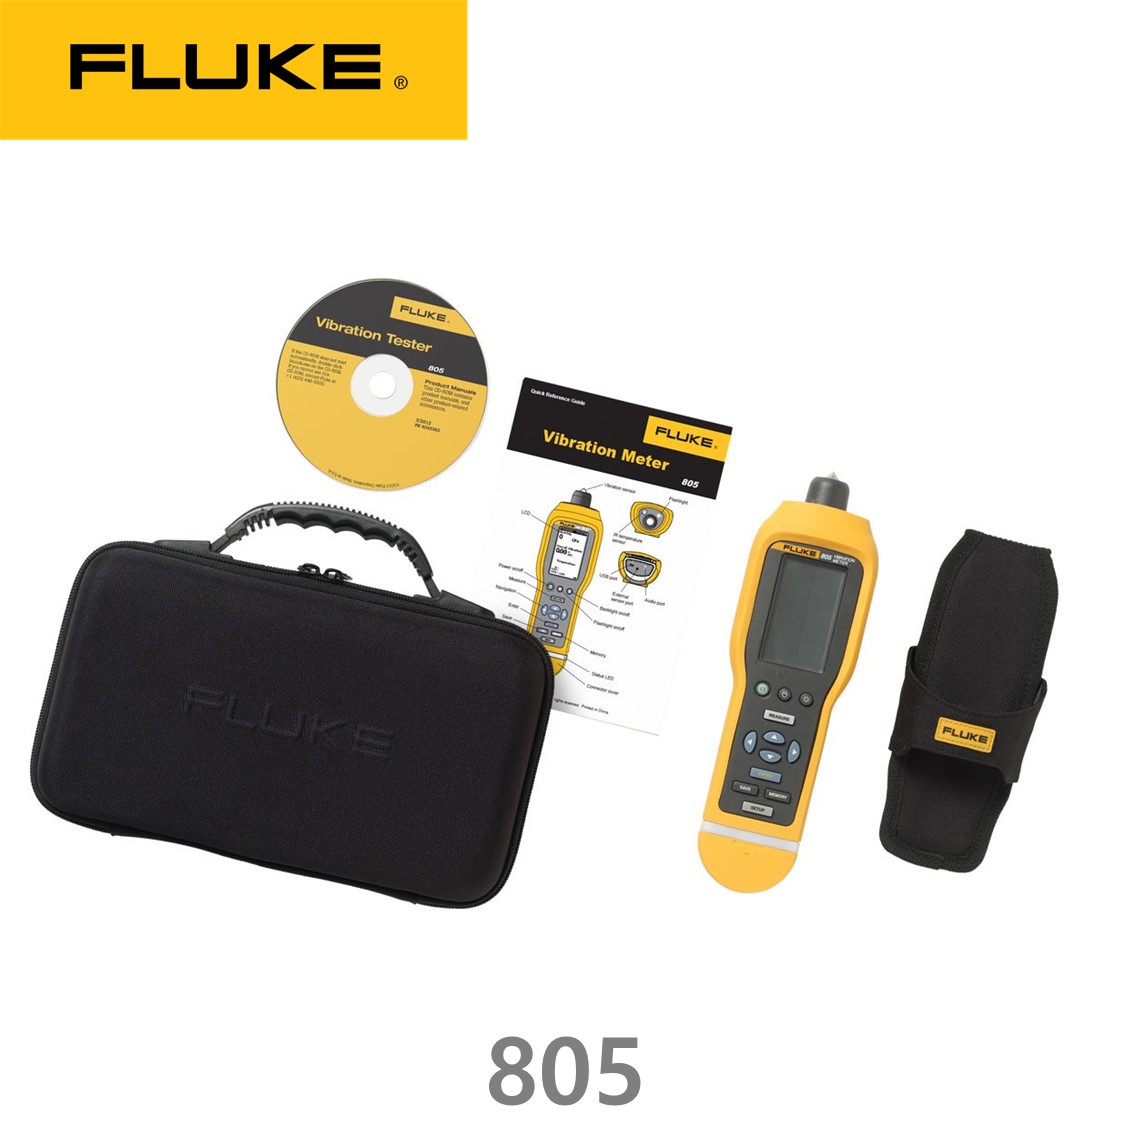 [FLUKE 805] ﻿모터제품 수명연장 산업용 진동측정기진동분석계, 플루크805